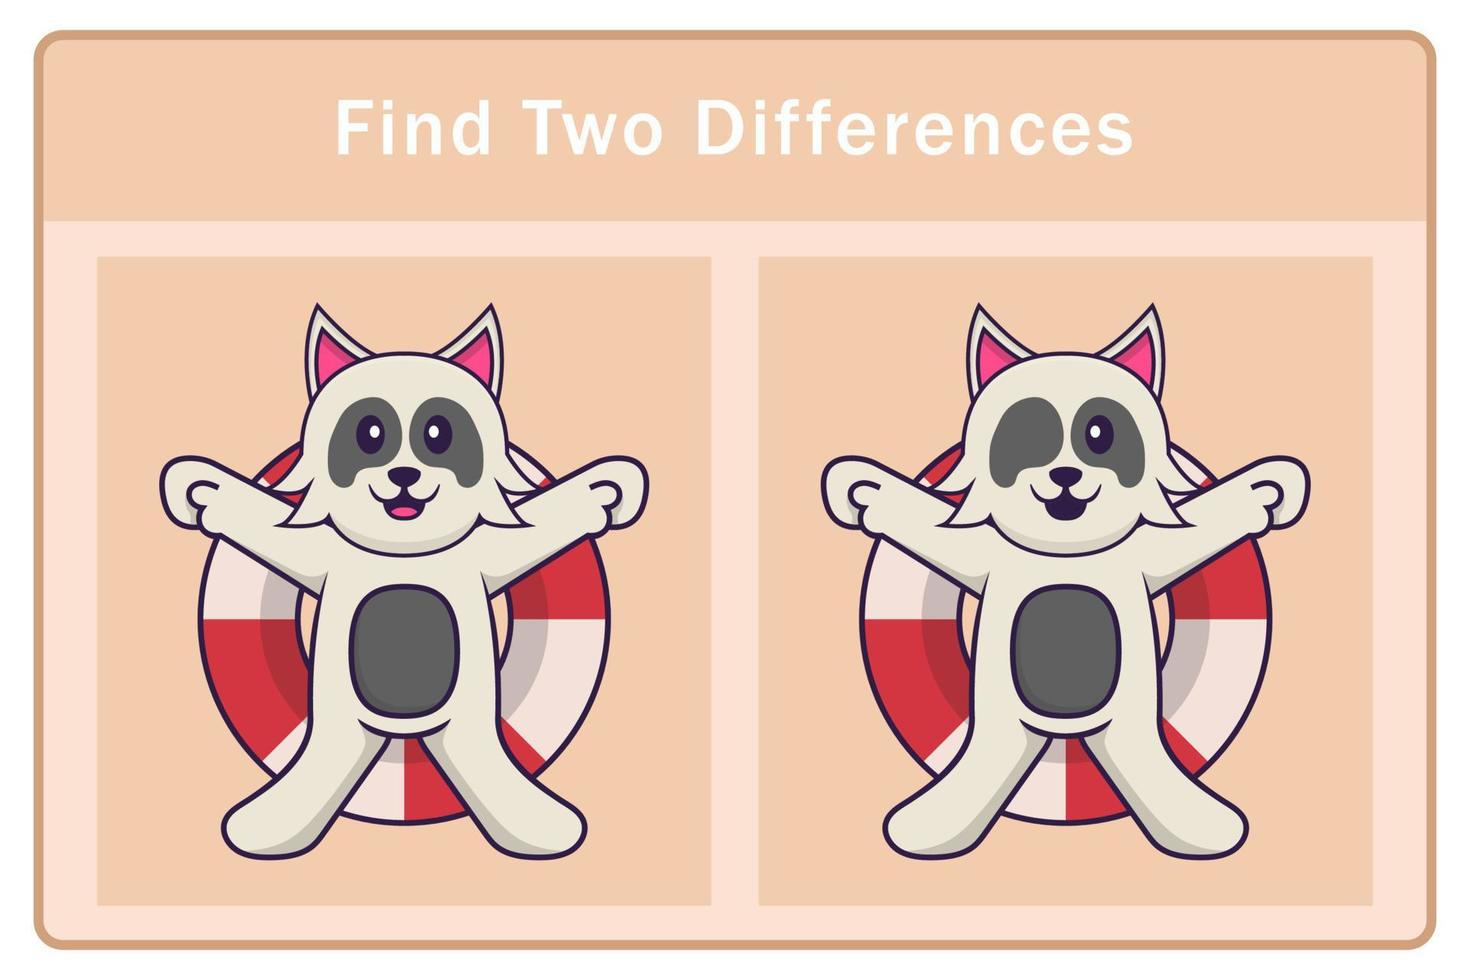 personaje de dibujos animados lindo perro. encontrar diferencias. juego educativo para niños. ilustración vectorial de dibujos animados vector